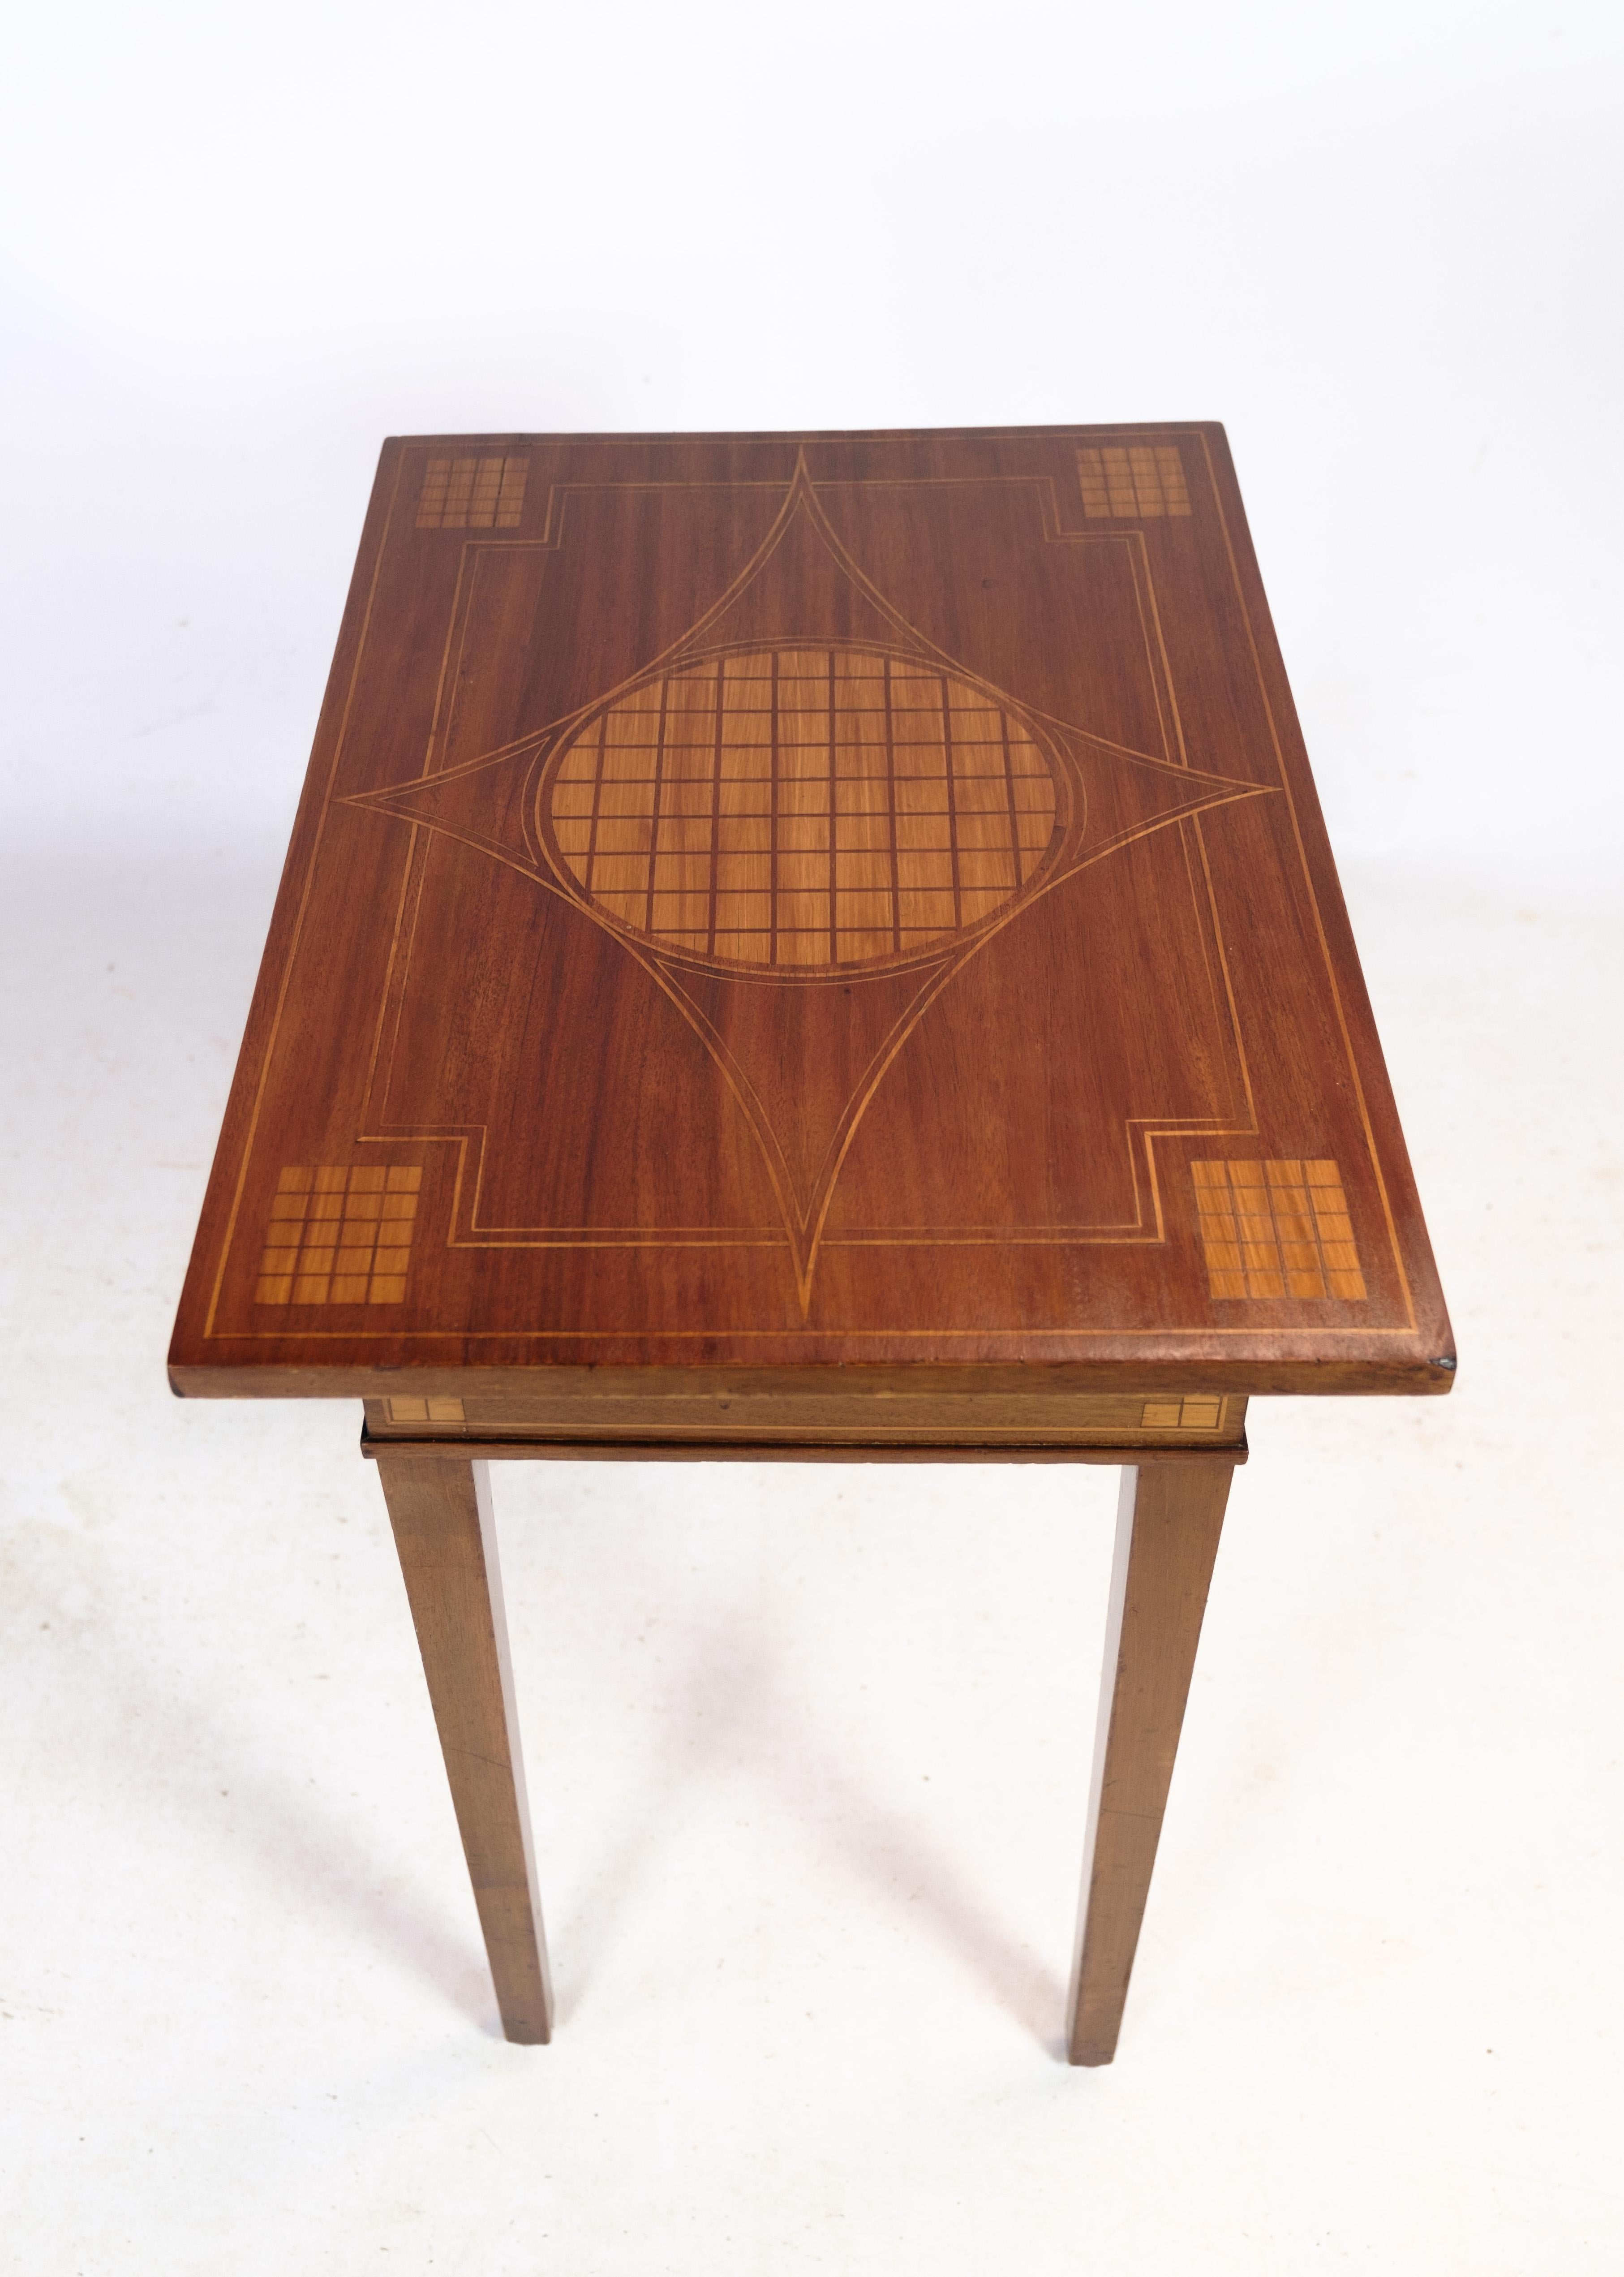 Beistelltisch aus Mahagoni mit Verzierungen in Form von Nussbaumeinlegearbeiten sowohl auf der Tischplatte als auch auf den Beinen aus den 1920er Jahren.
Maße in cm: H:66,5 B:63 T:44,5